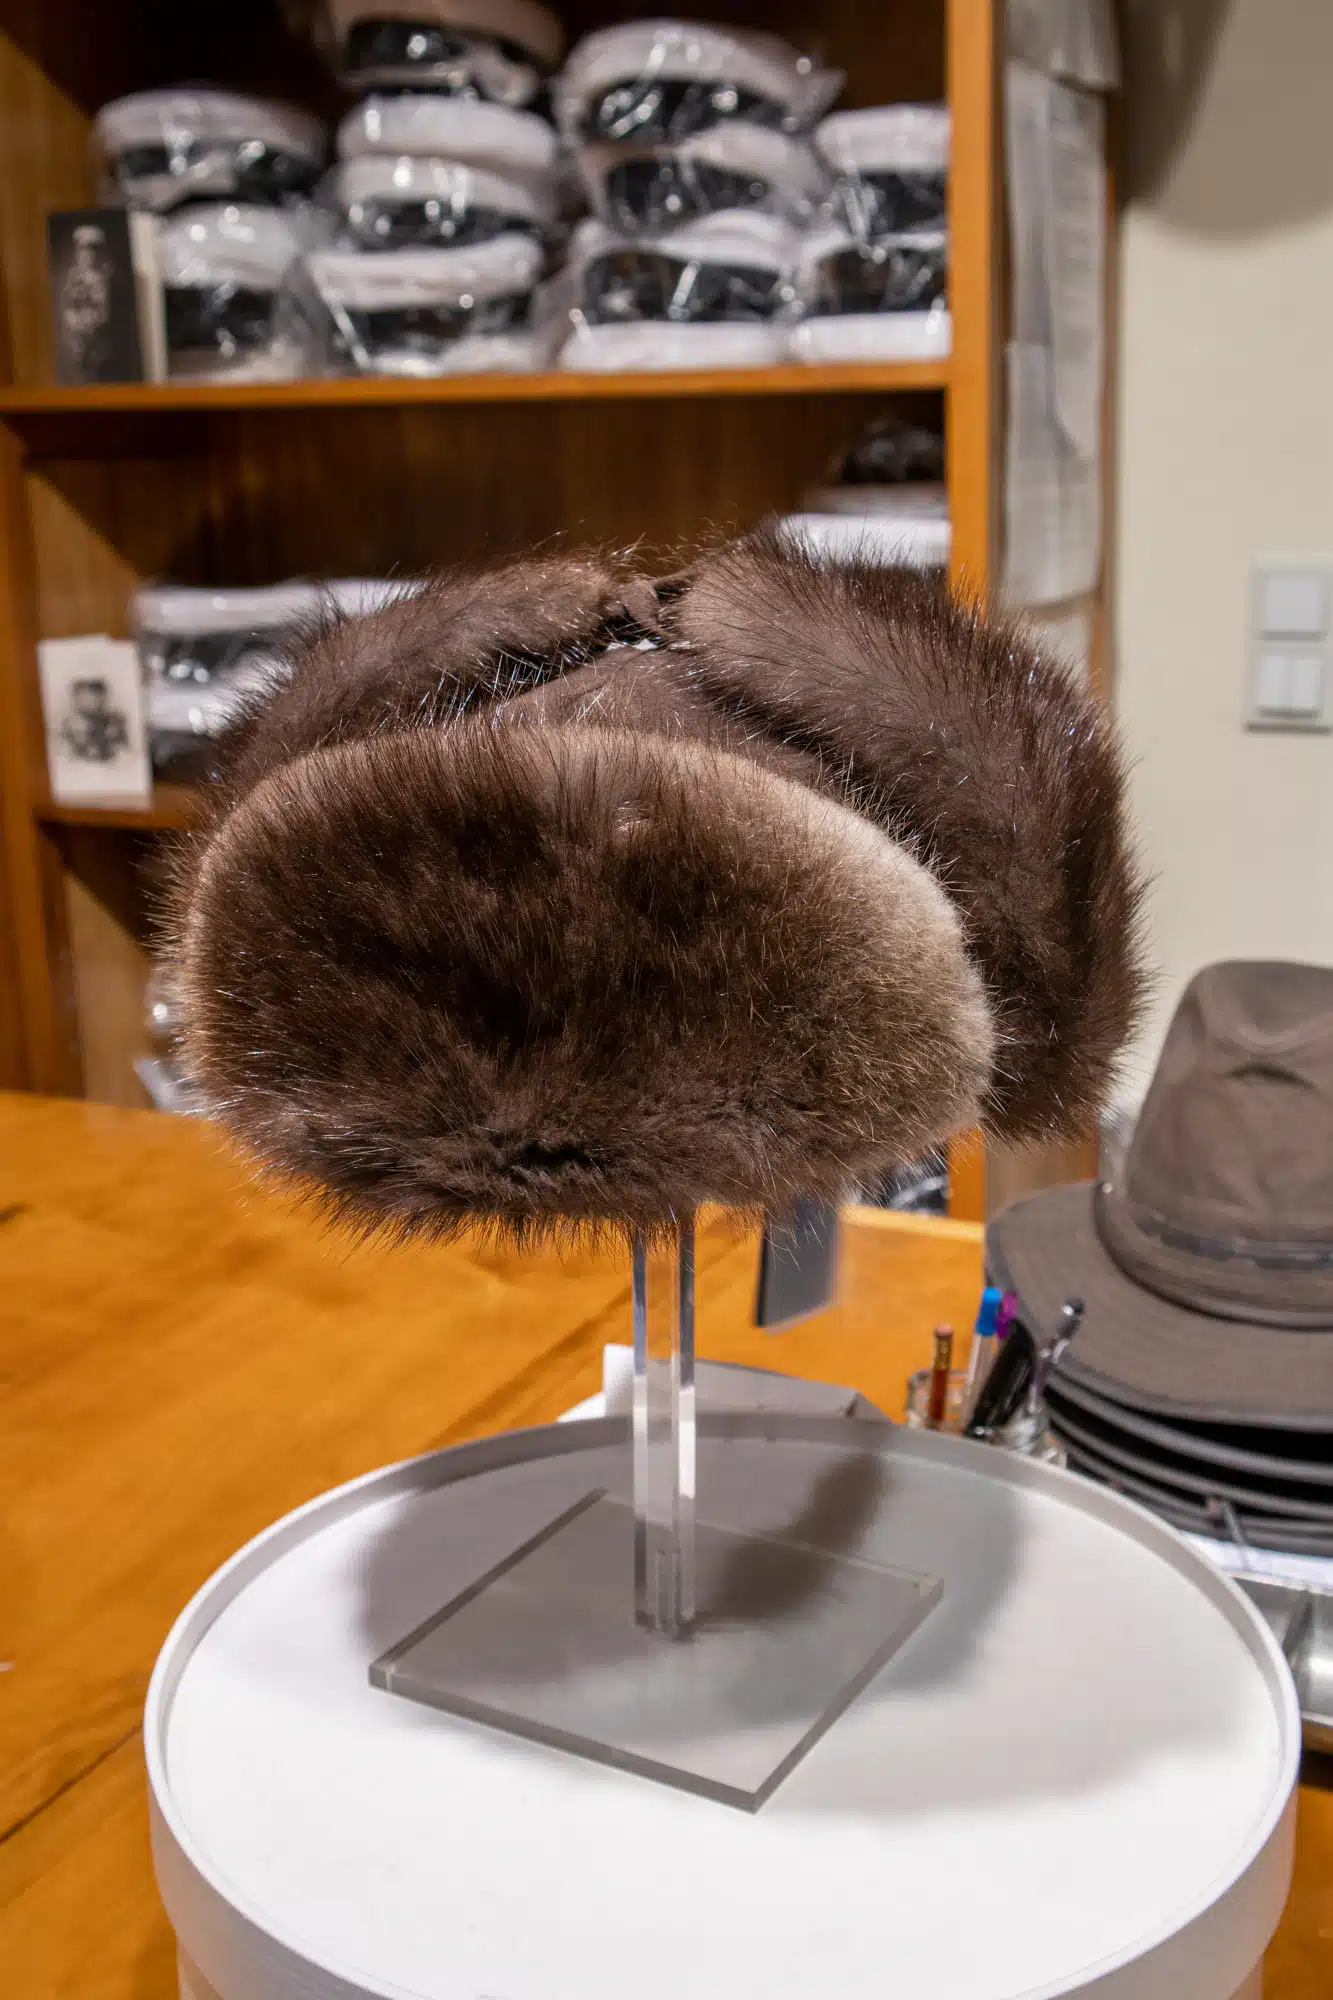 Finnish muskrat ushanka hat